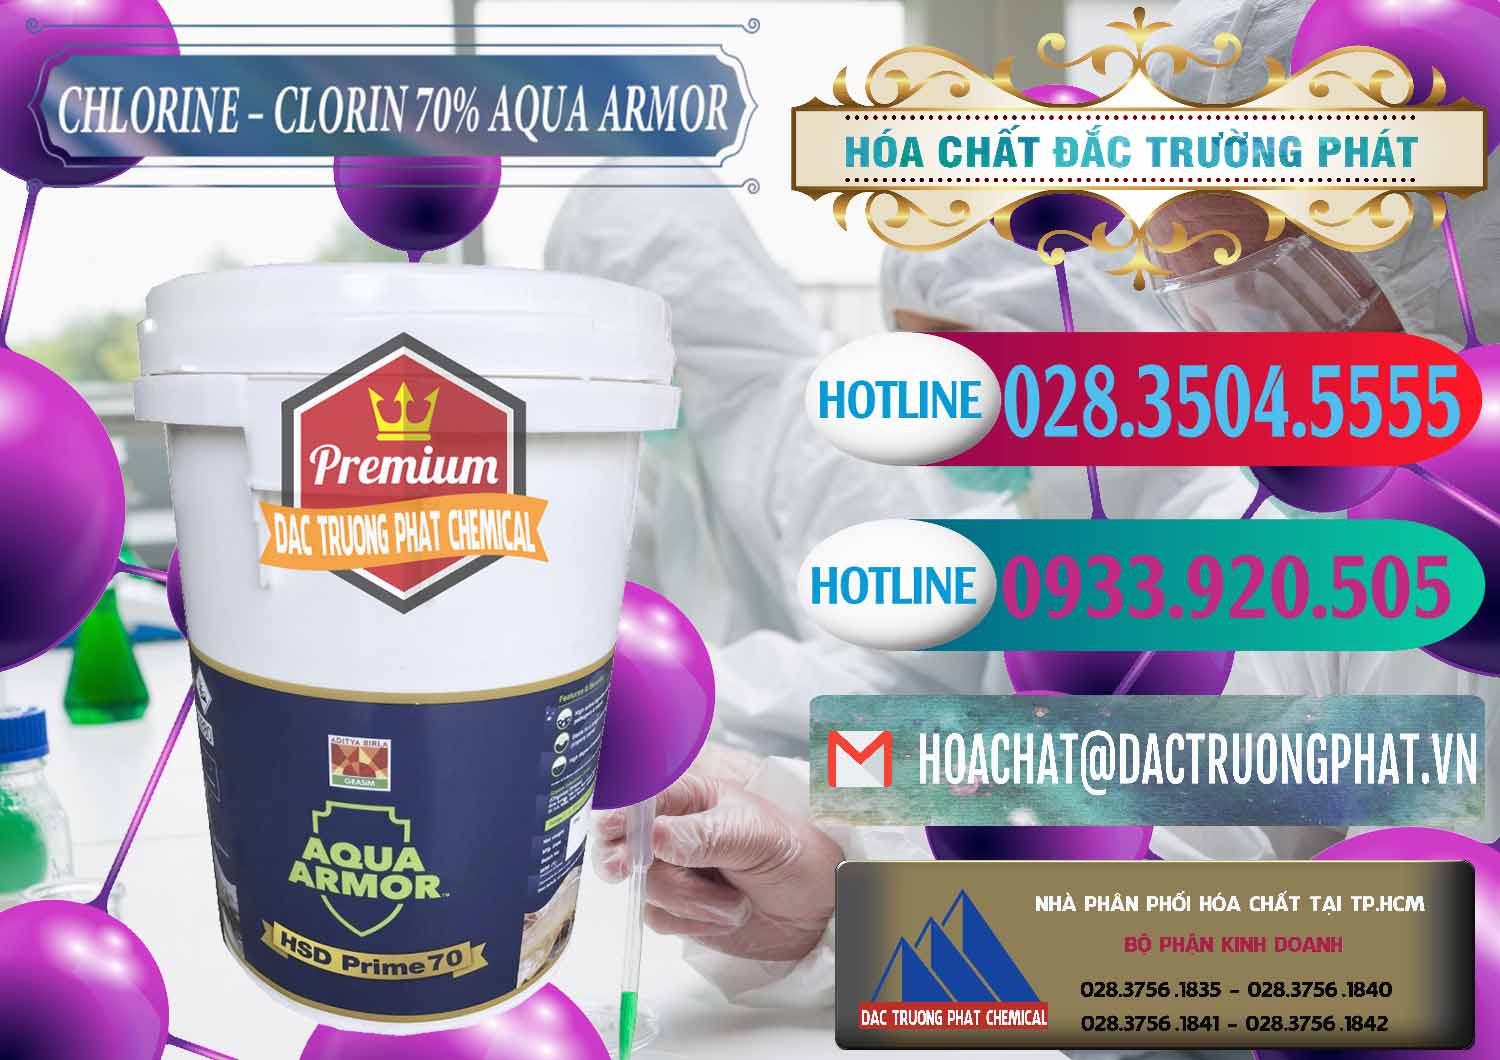 Nhà phân phối & bán Chlorine – Clorin 70% Aqua Armor Aditya Birla Grasim Ấn Độ India - 0241 - Nơi cung cấp - phân phối hóa chất tại TP.HCM - truongphat.vn